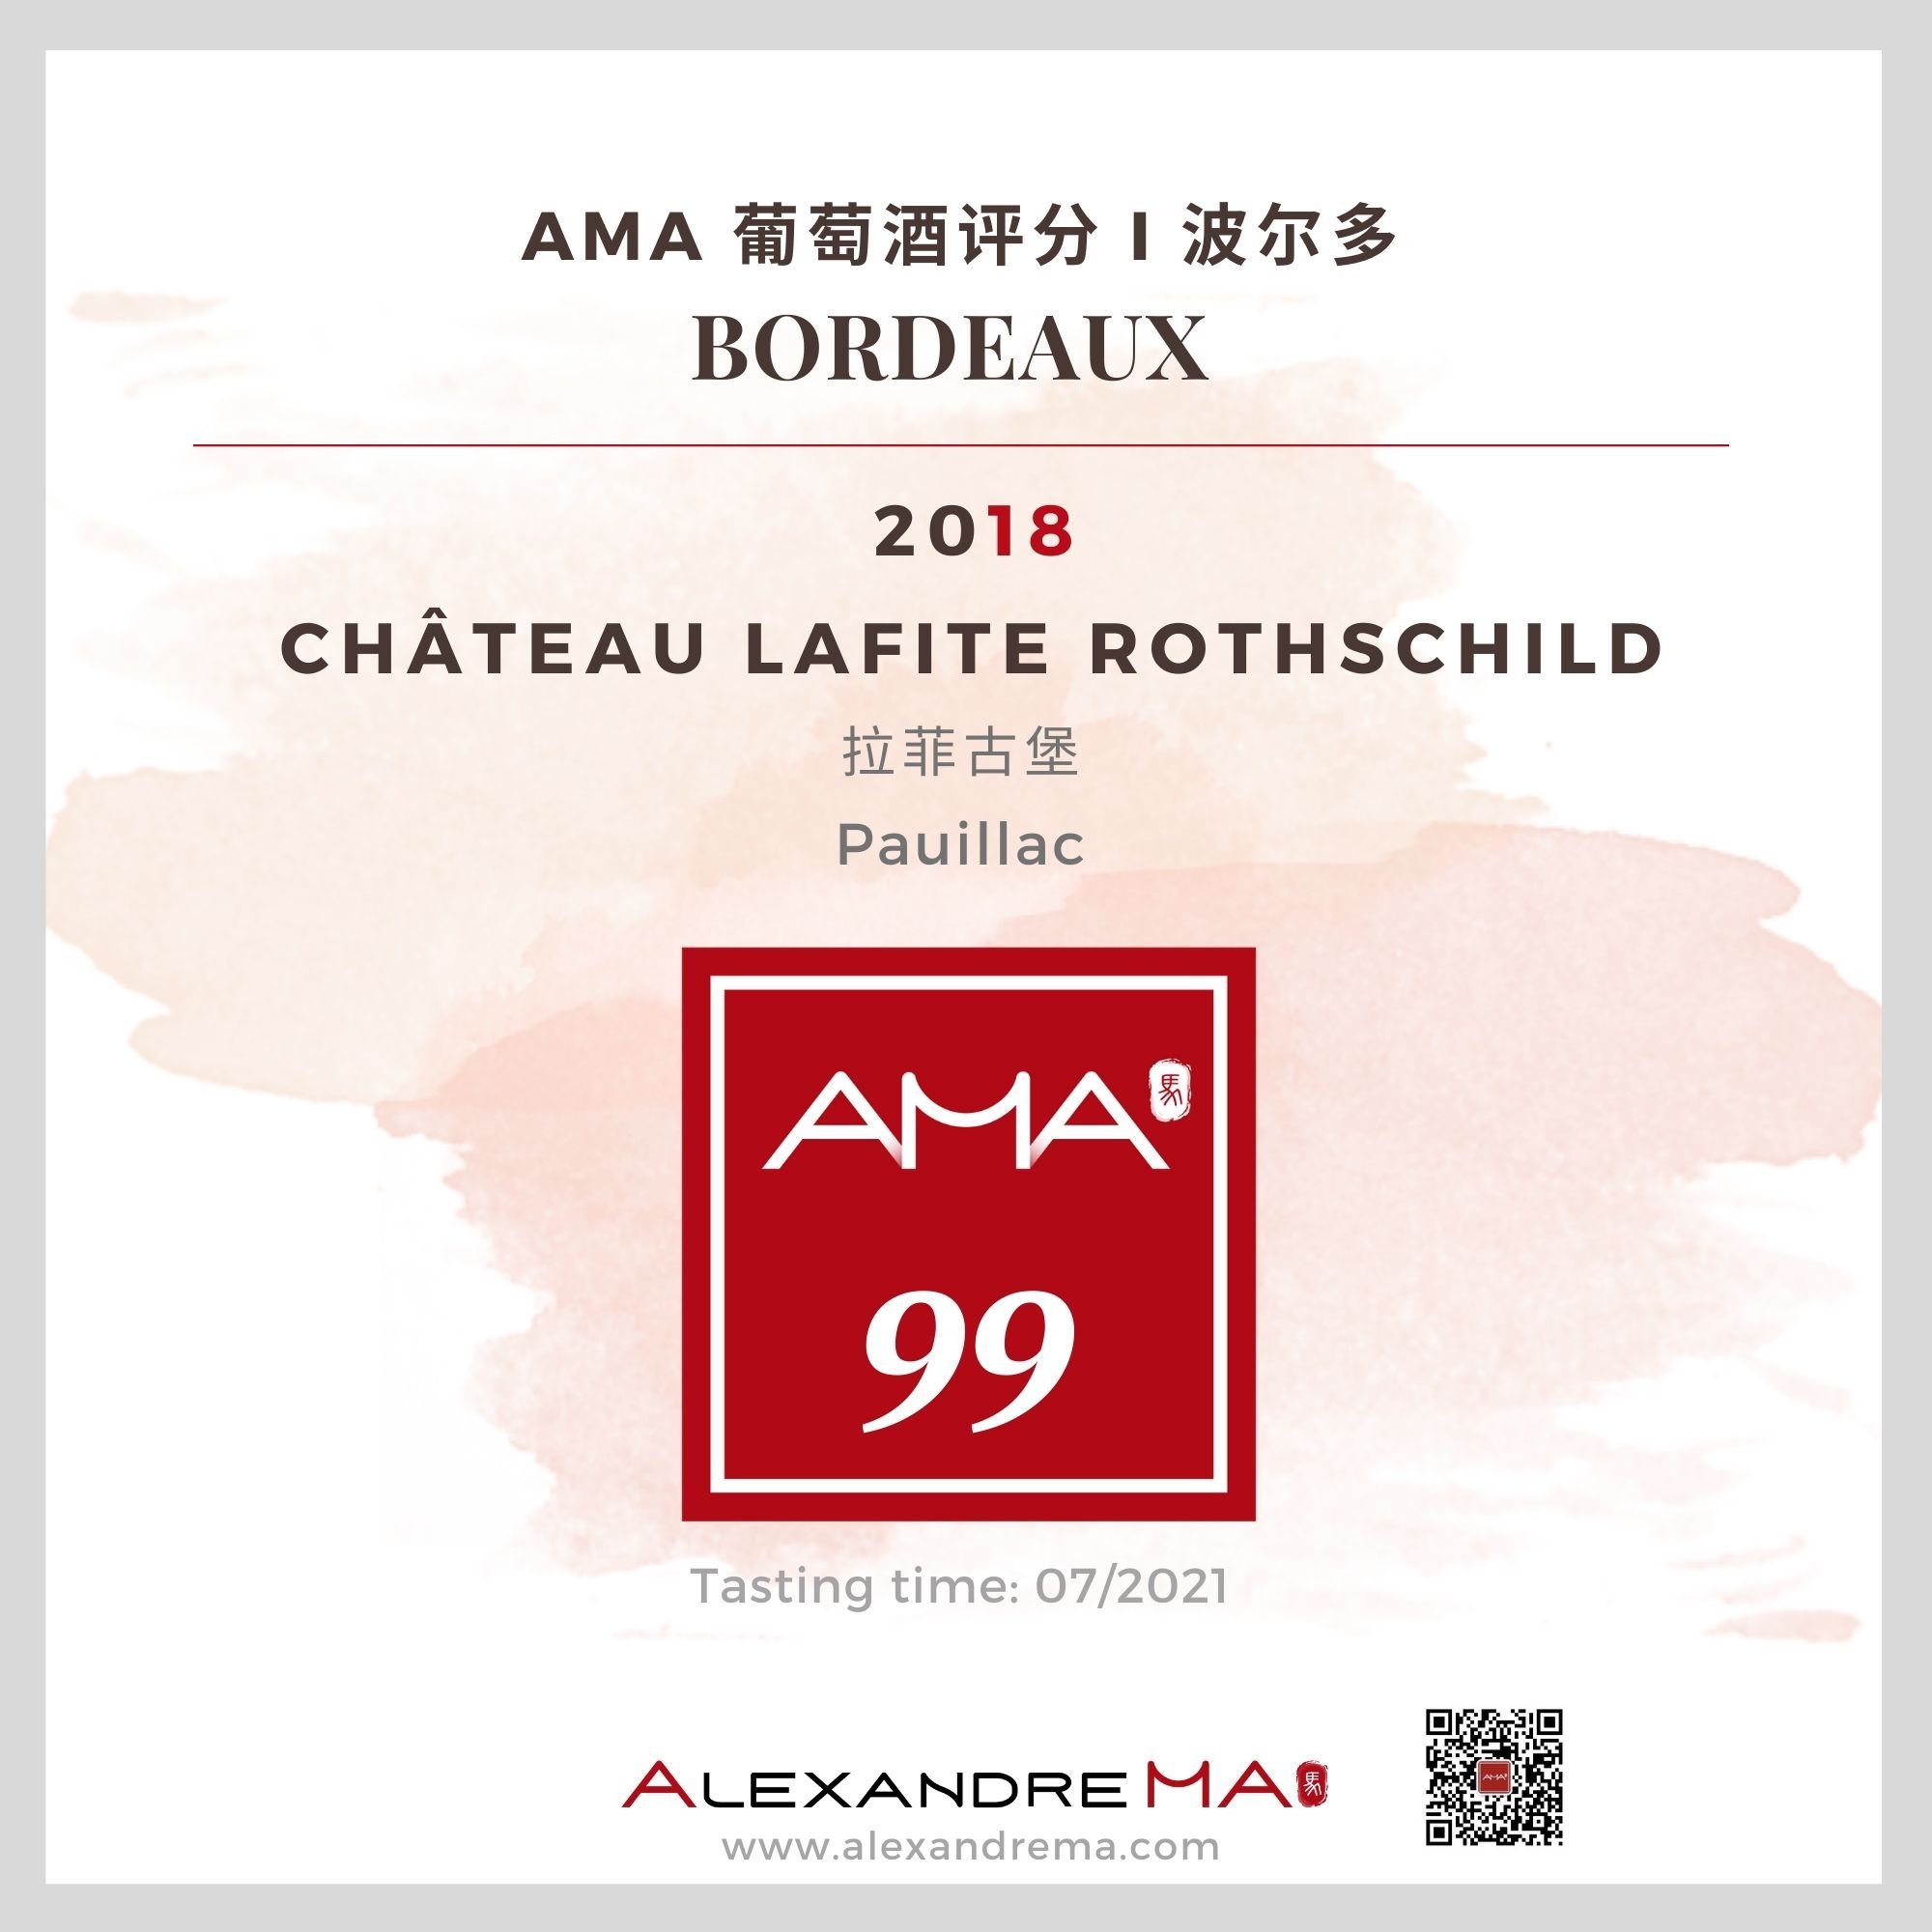 Château Lafite Rothschild 2018 拉菲古堡 - Alexandre Ma